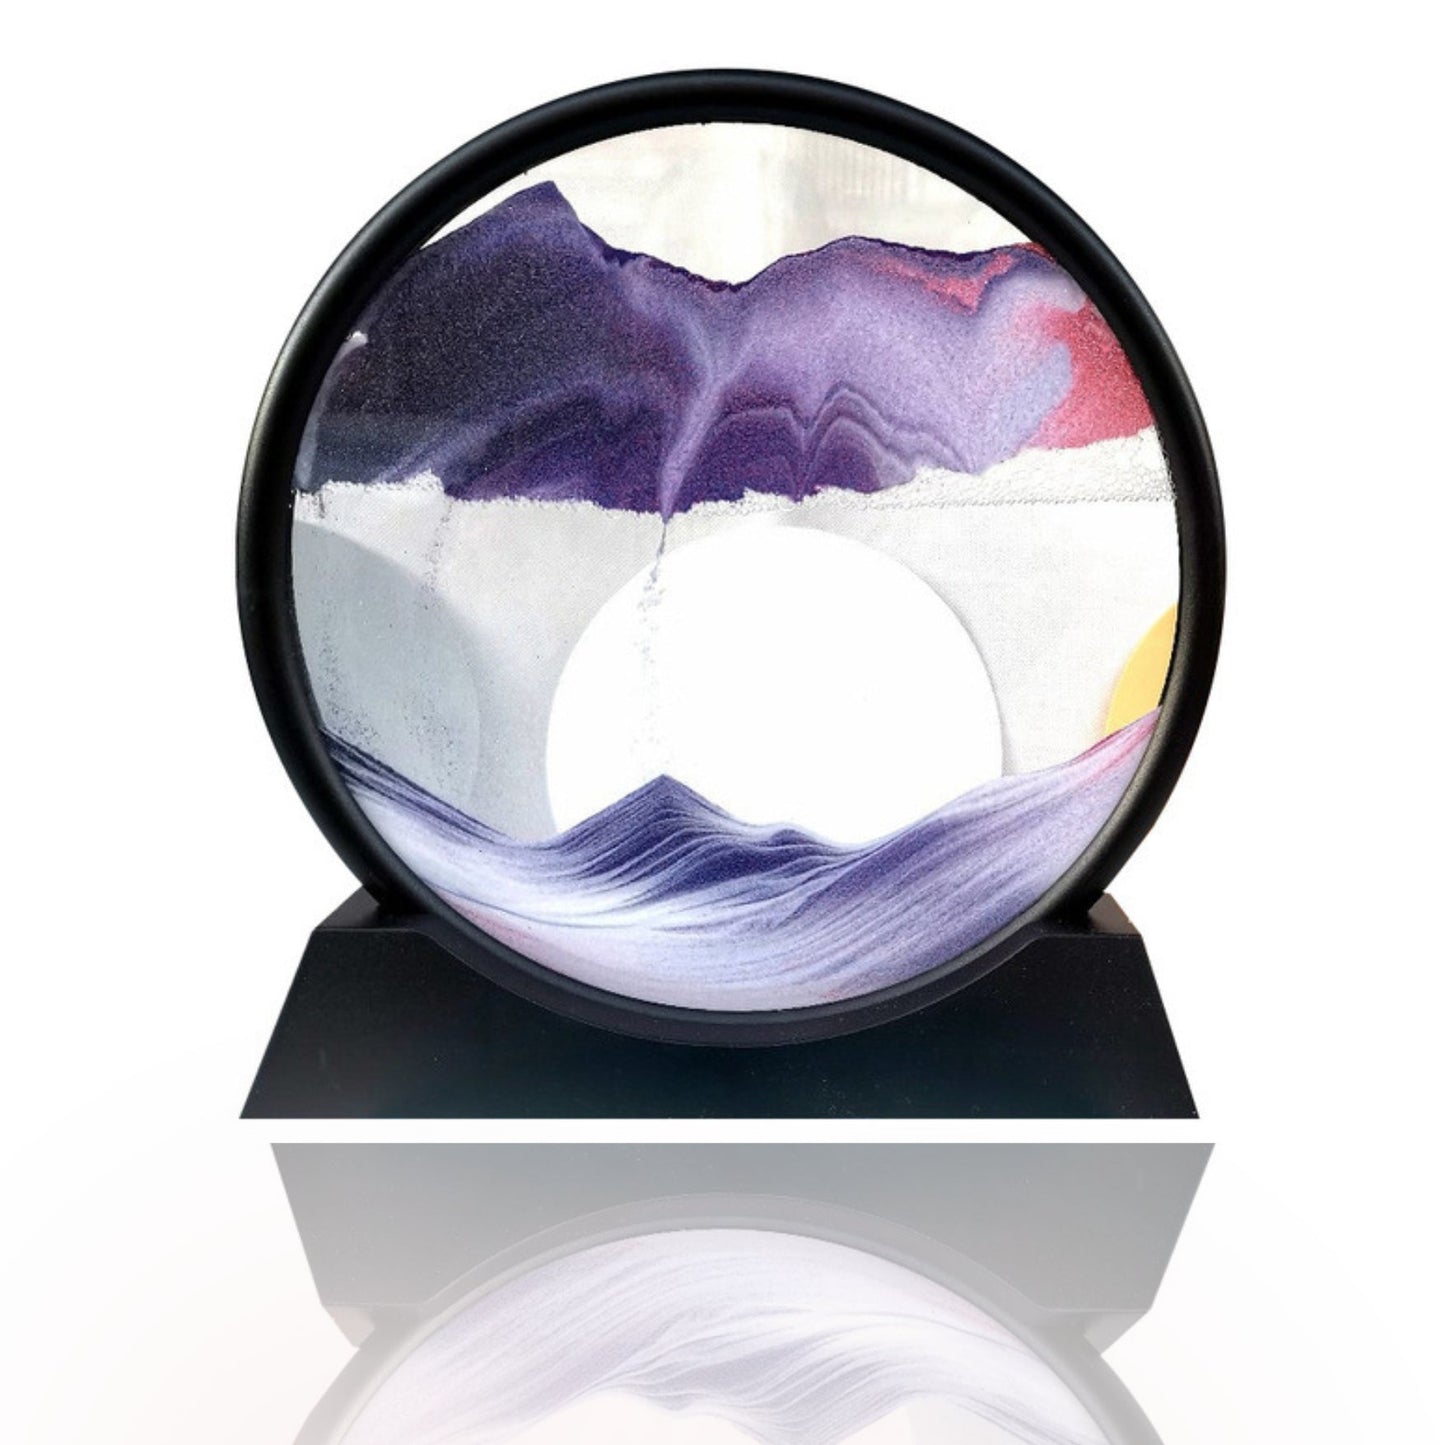 DreamScape™ 3D timeglas 